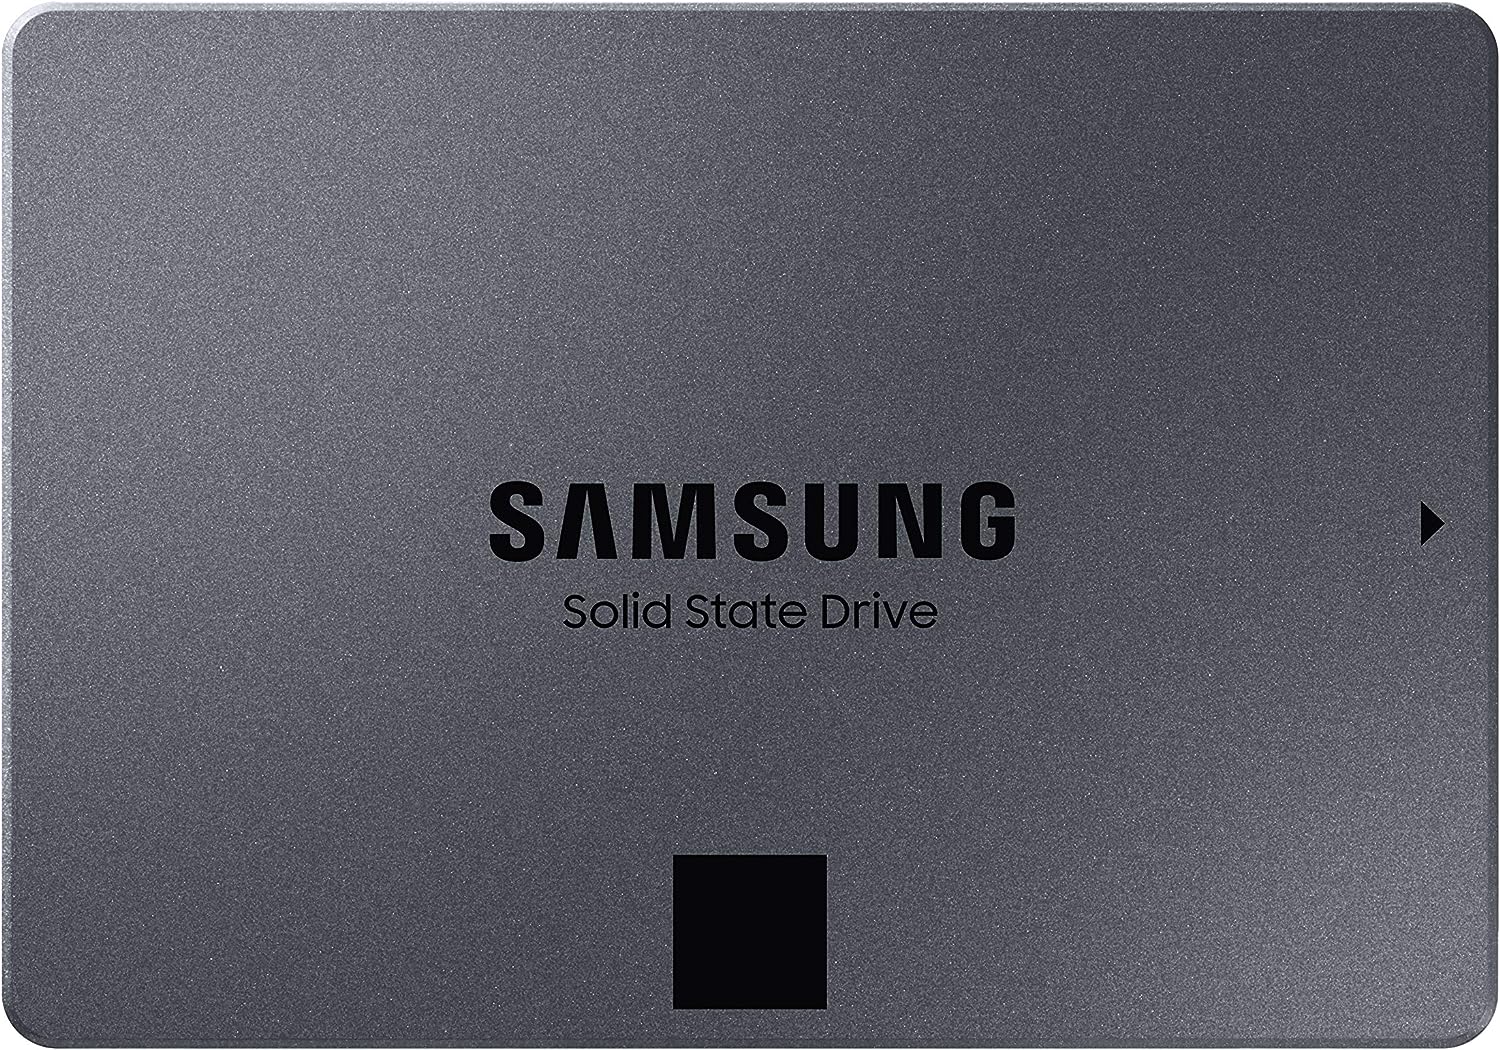 SAMSUNG 870 QVO 8 TB SATA 2.5 Inch Internal Solid State Drive SSD MZ 77Q8T0, Black, MZ-77Q8T0BW, Samsung T5